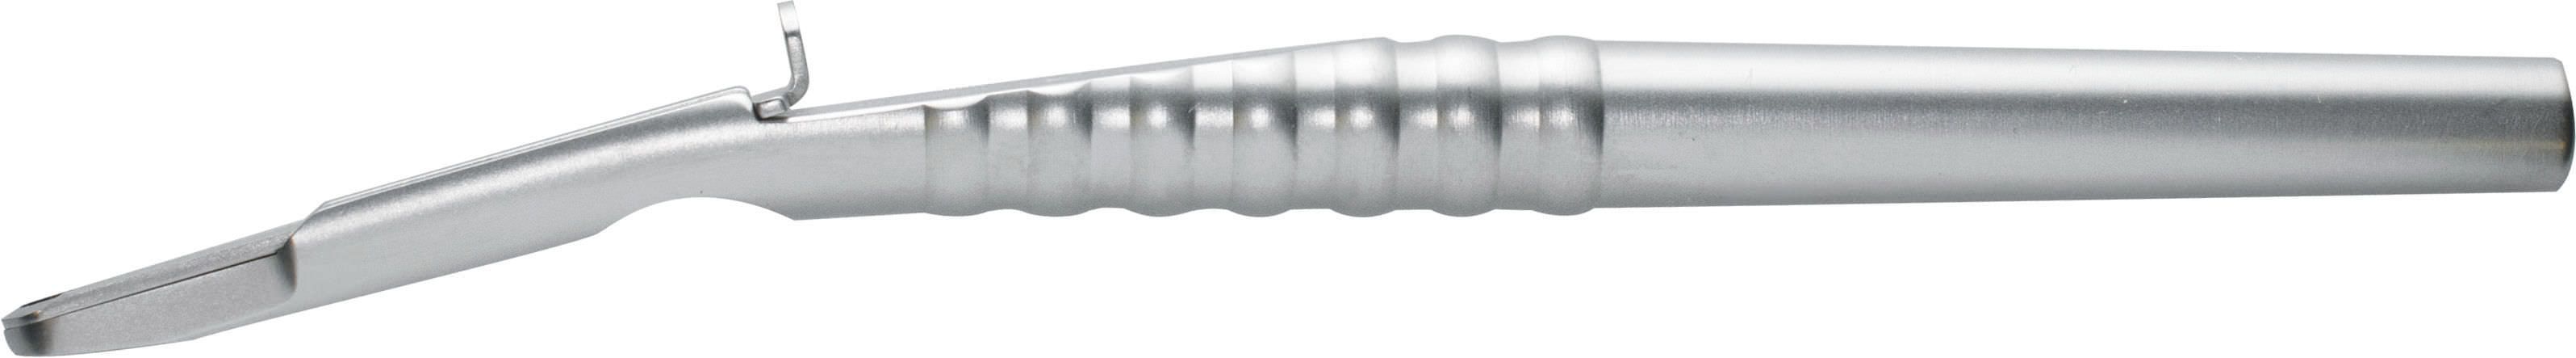 Bone scraper dental 700-2 A. Titan Instruments